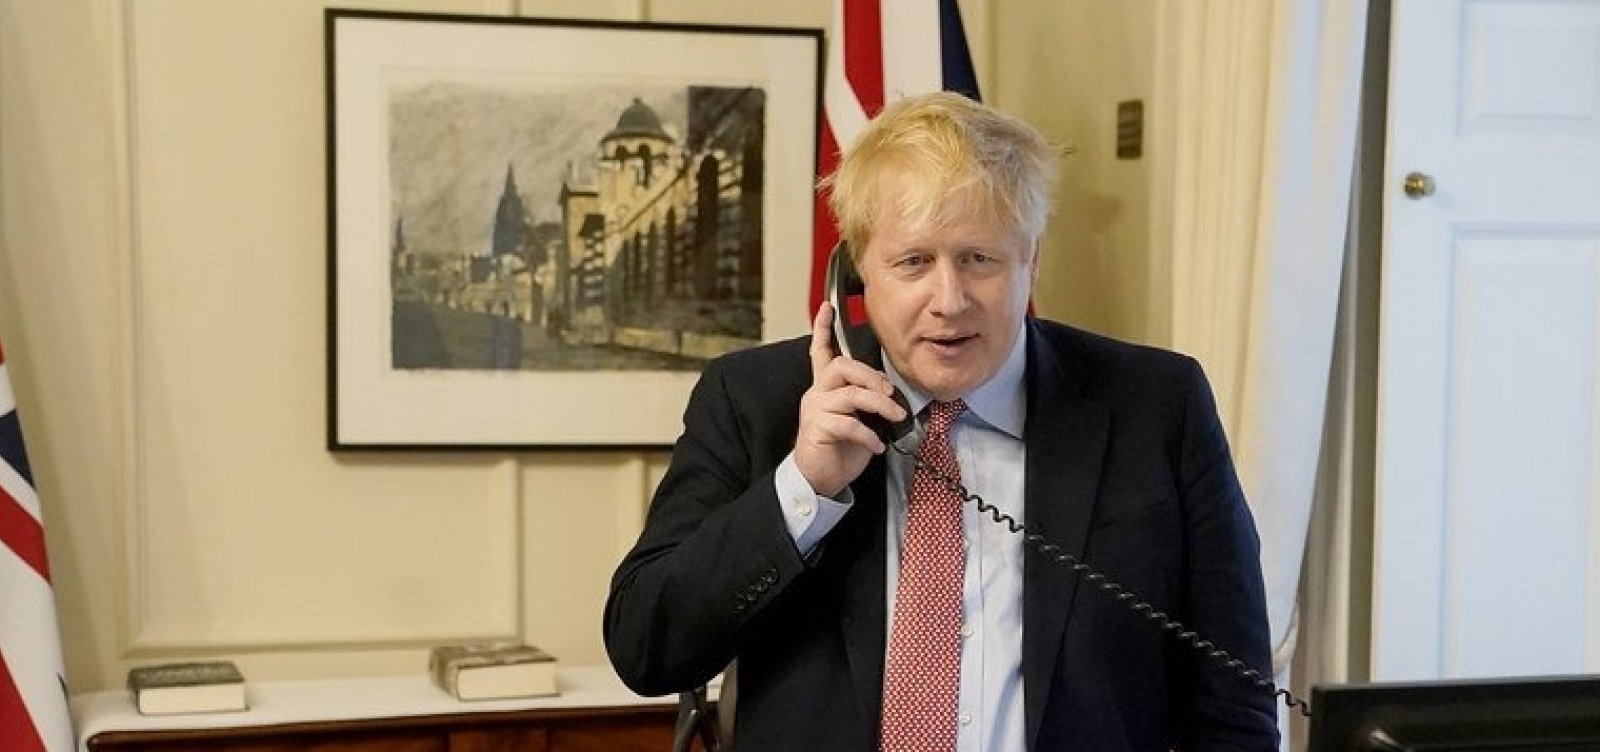  Primeiro-ministro do Reino Unido Boris Johnson testa positivo para coronavírus